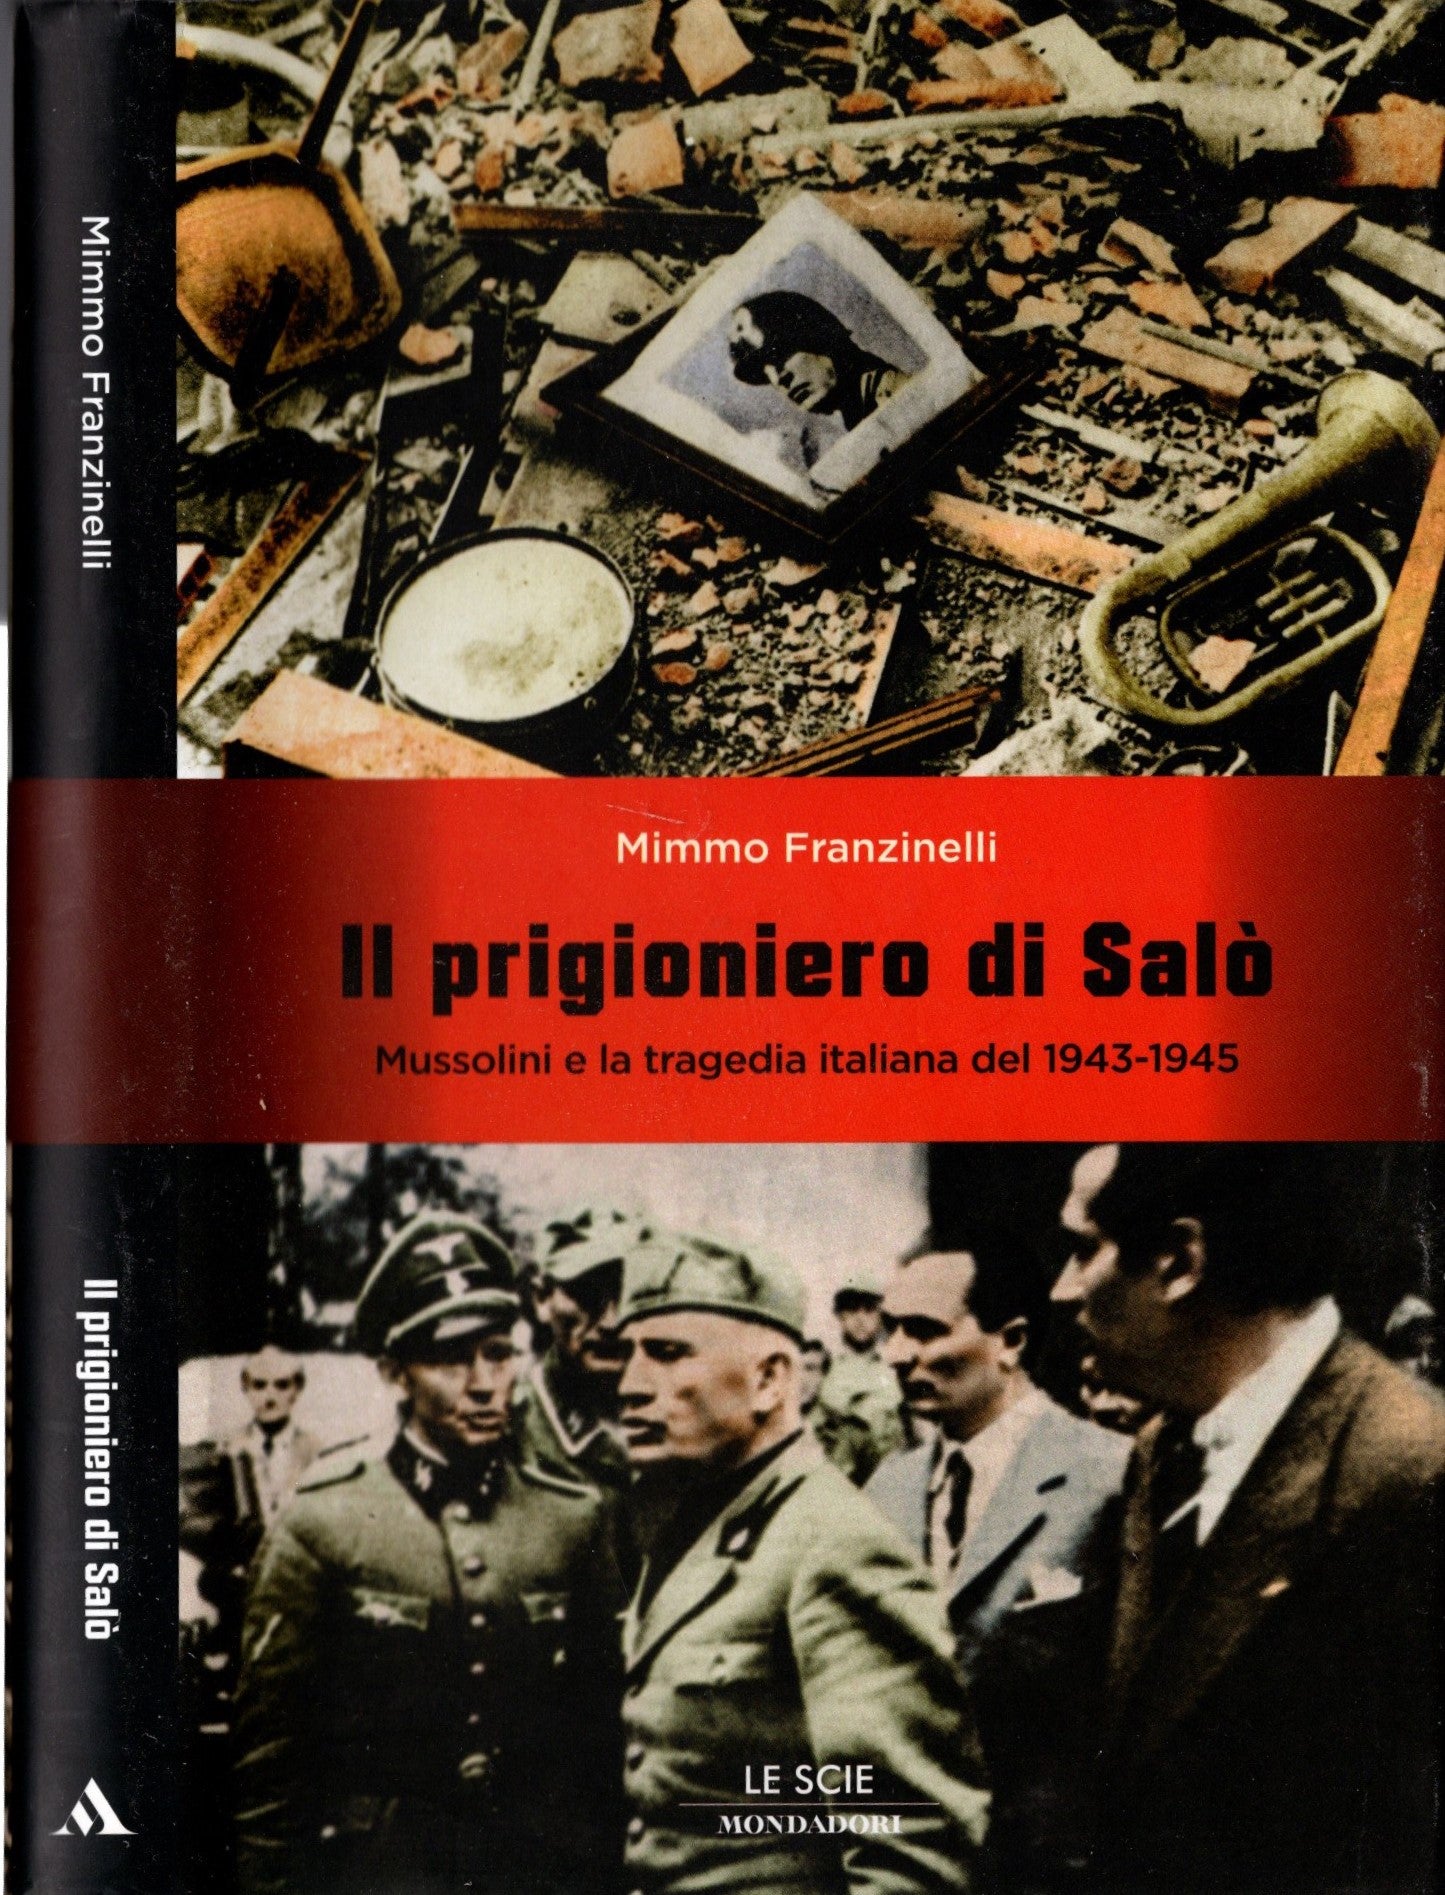 Il prigioniero di Salò : Mussolini e la tragedia italiana del 1943-1945 / Mimmo Franzinelli